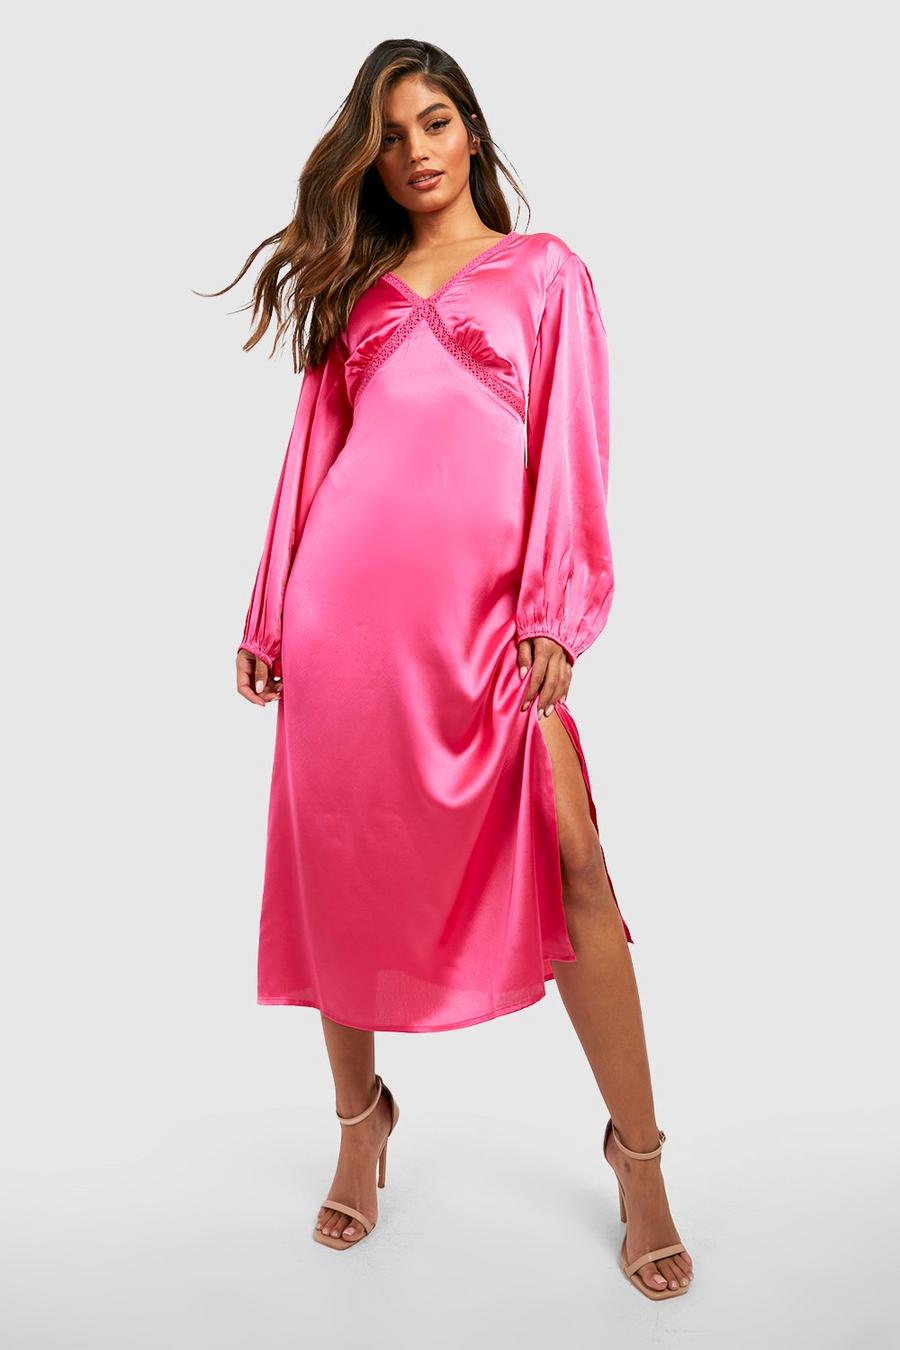 Hot pink Satin Long Sleeve Midaxi Dress